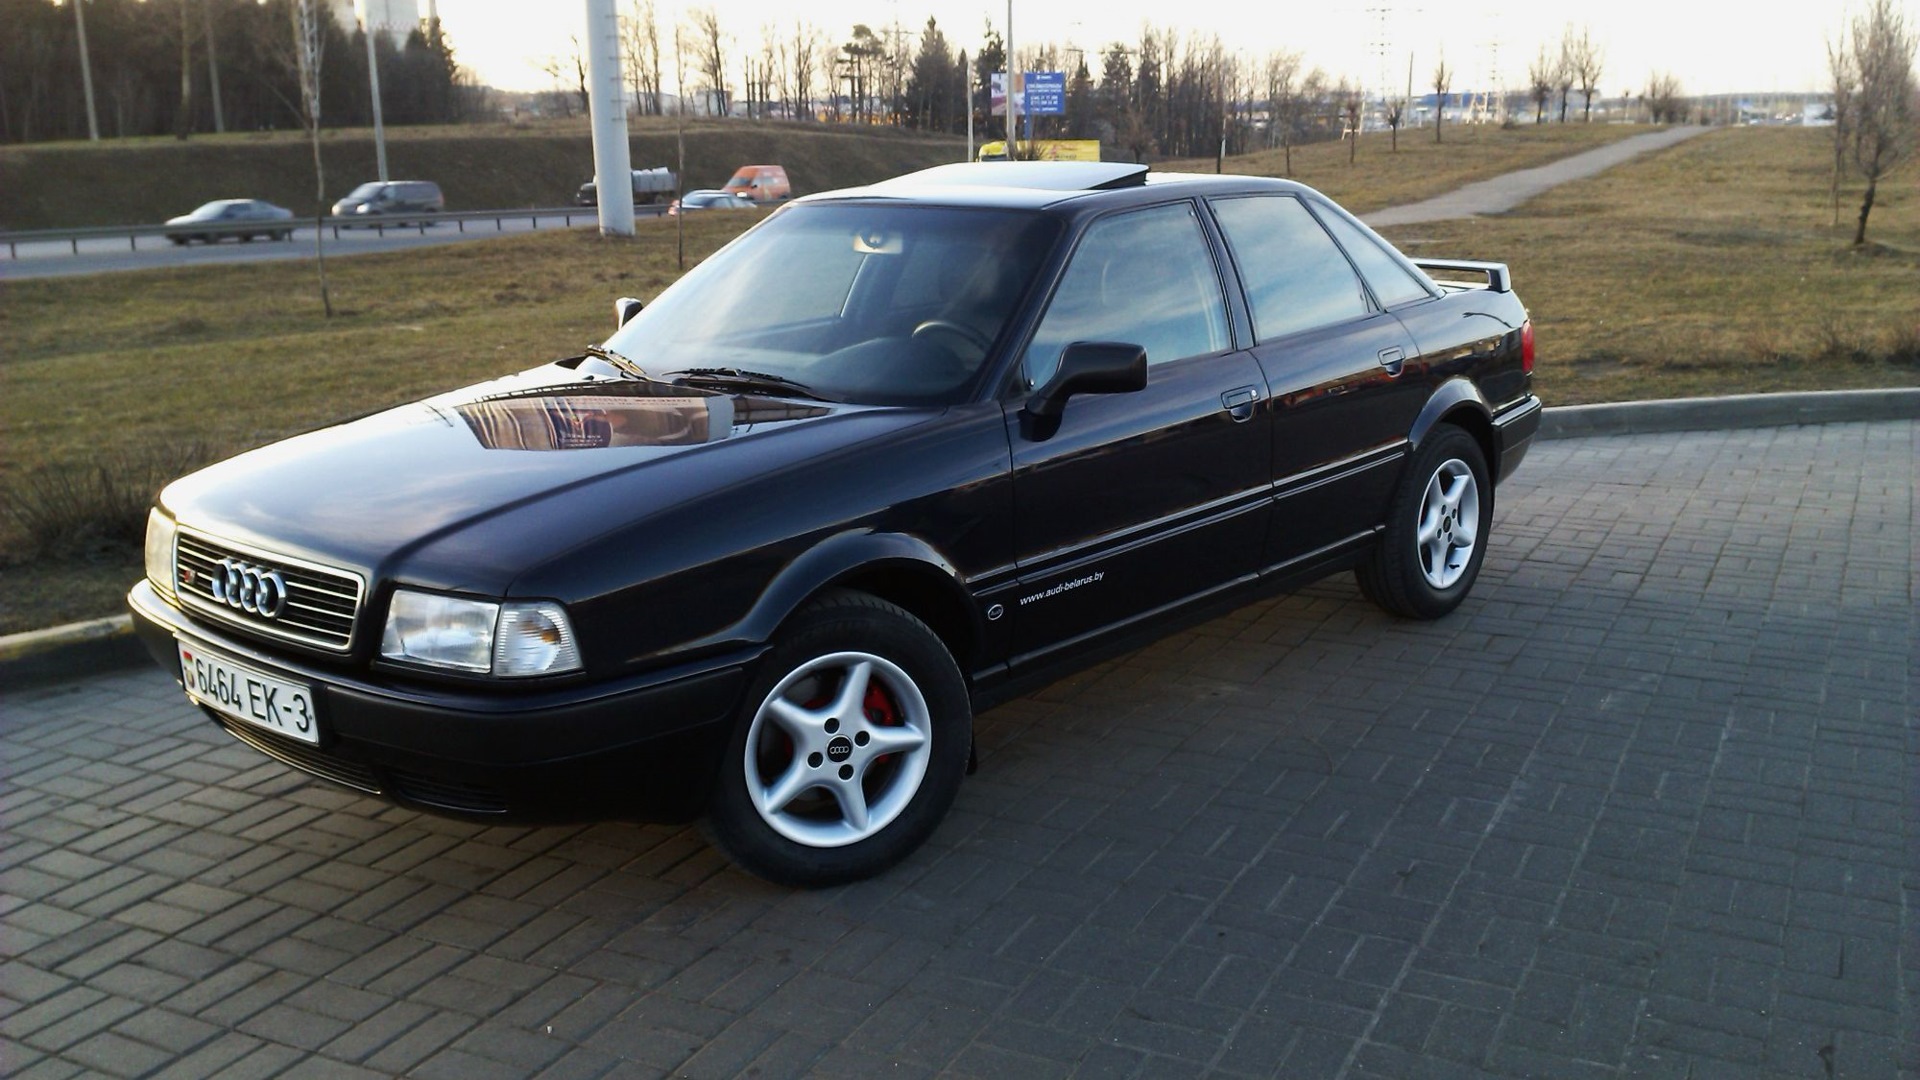 Купить ауди бочку. Audi 80 b4 1994. Audi 80 b4 Black. Audi 80 b4 черная. Ауди 80 б4 черная.